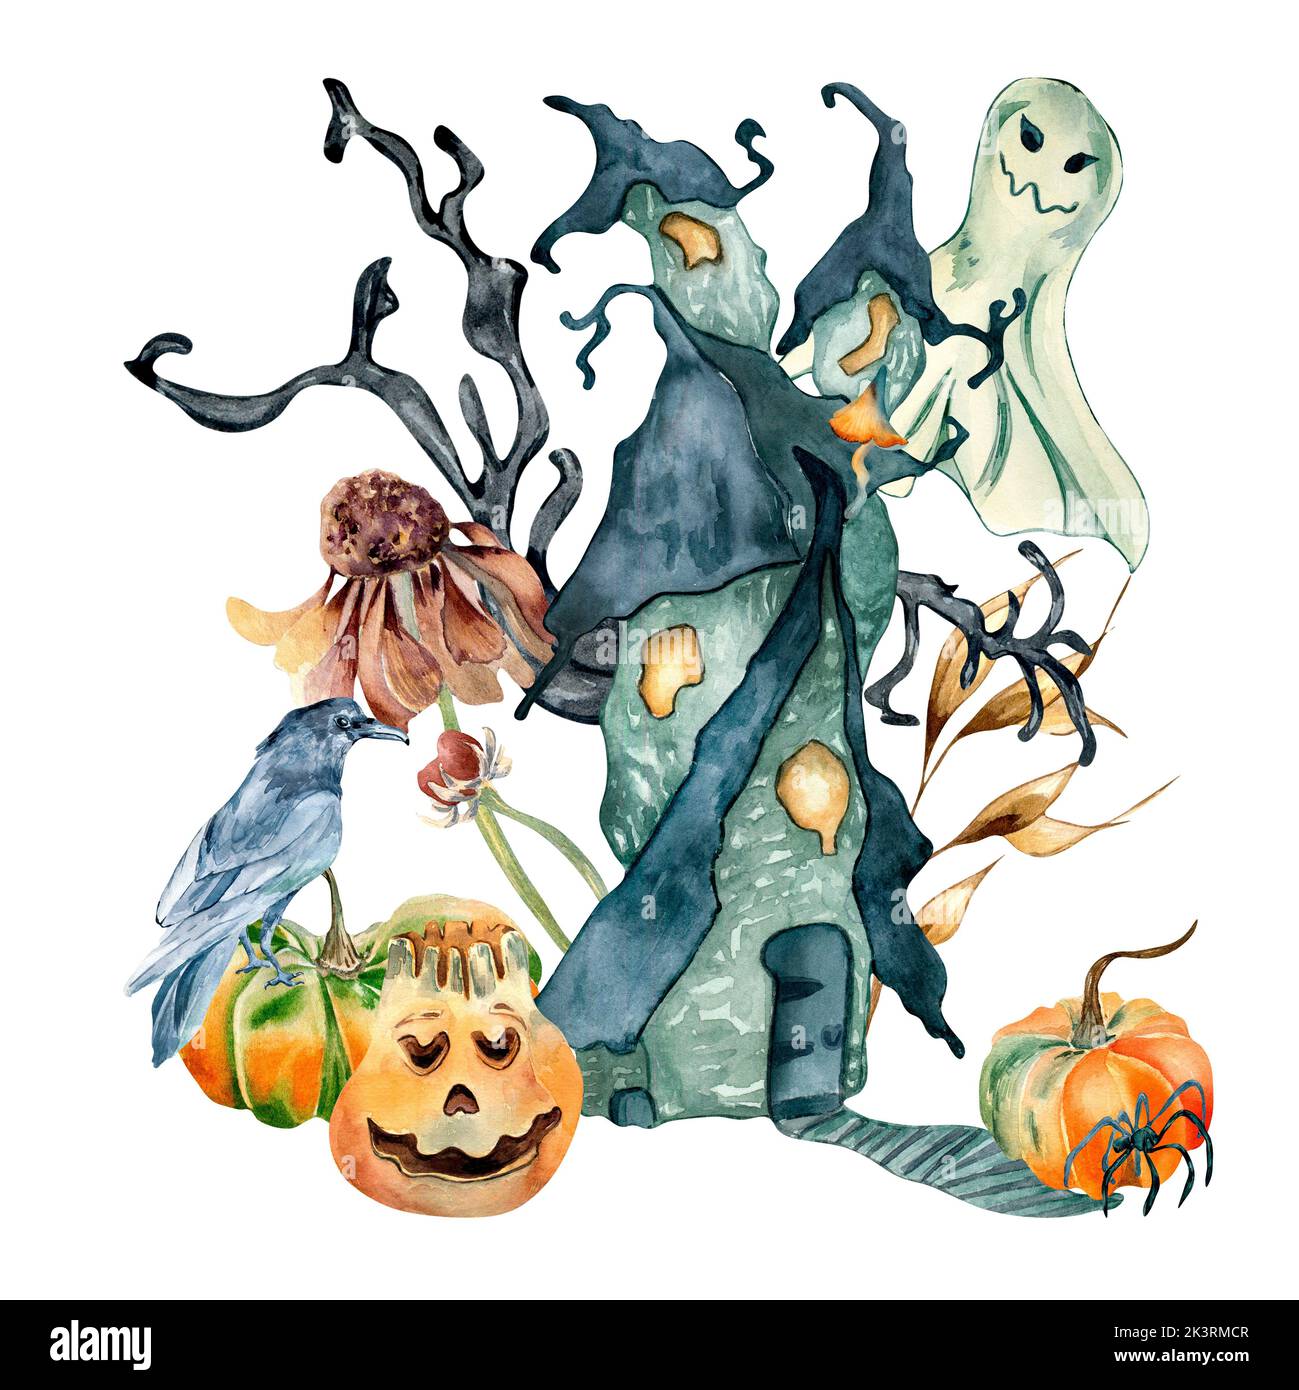 Imprimé coloré pour Halloween avec illustration d'aquarelle de maison hantée isolée sur blanc. Petite hutte, fantôme, corbeau, araignée, plantes d'automne, toundra de citrouille Banque D'Images